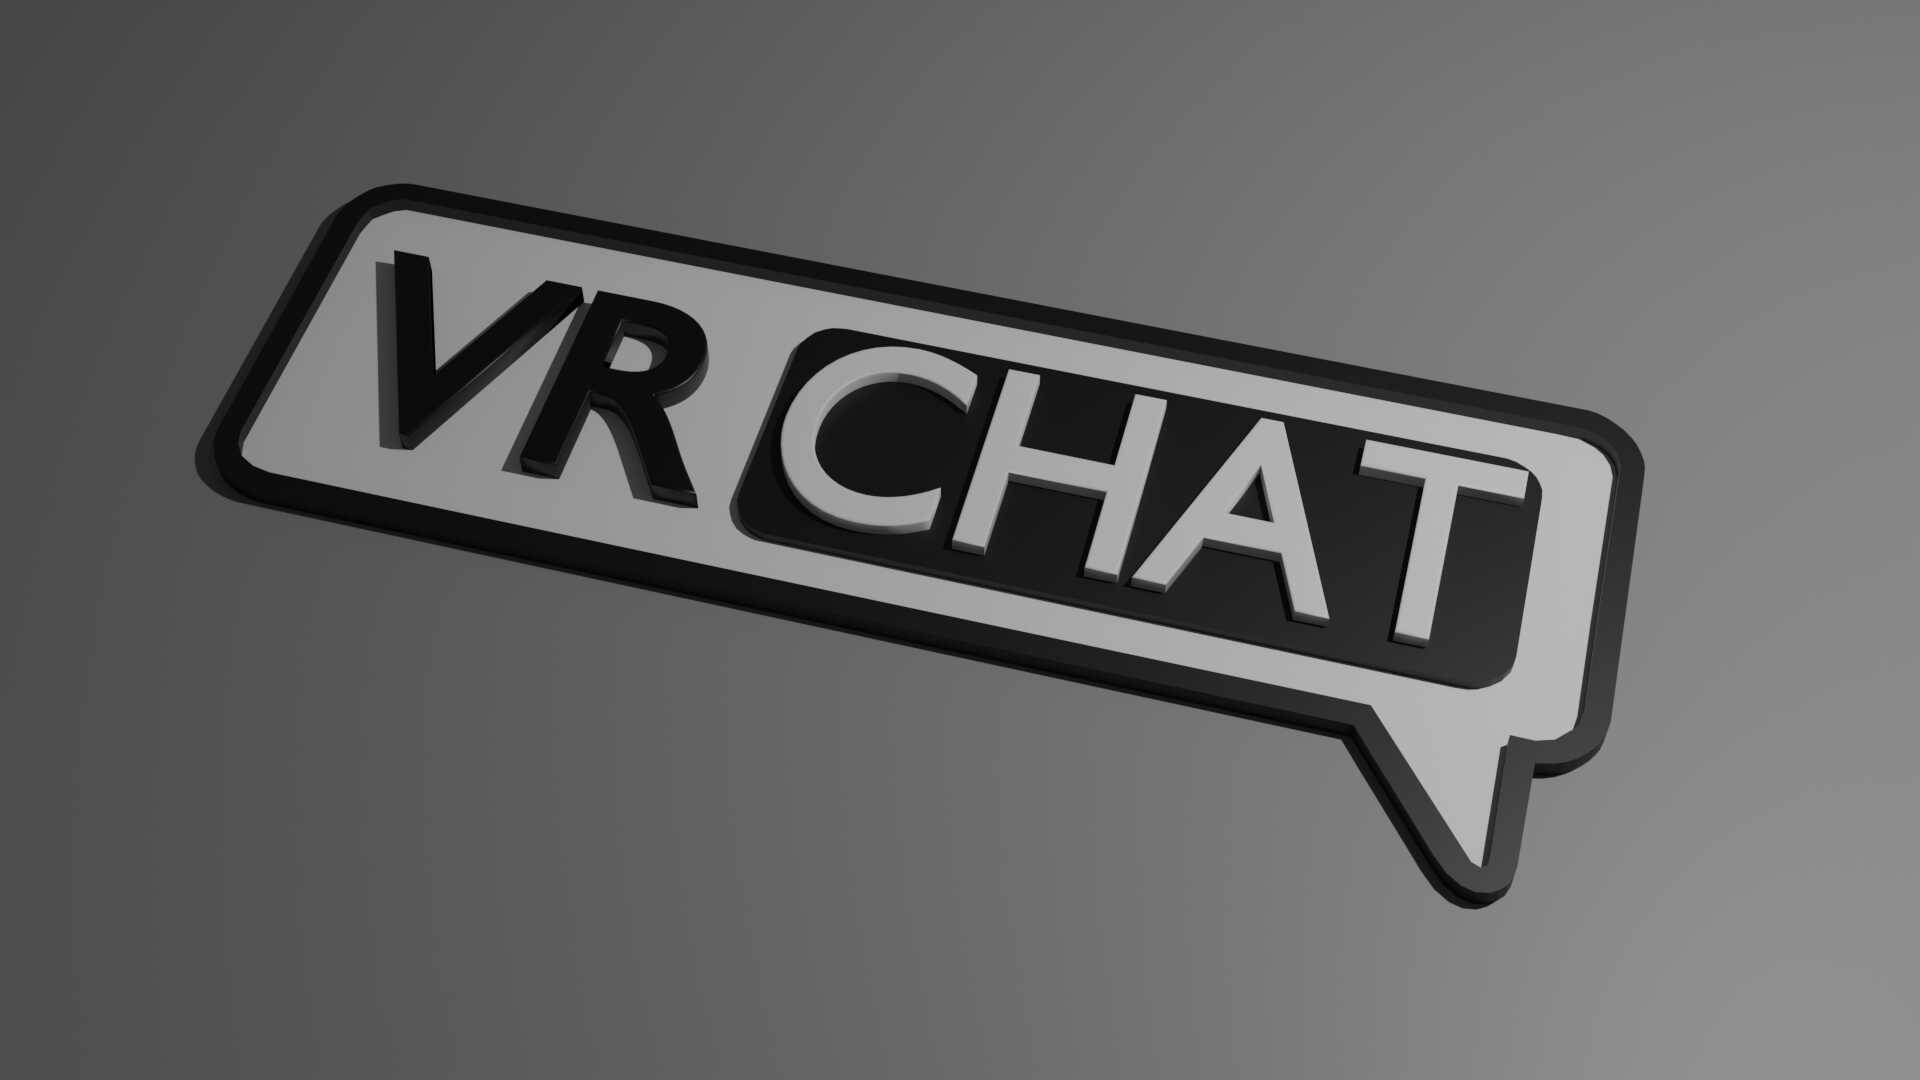 Monochrome Vrchat Logo Wallpaper